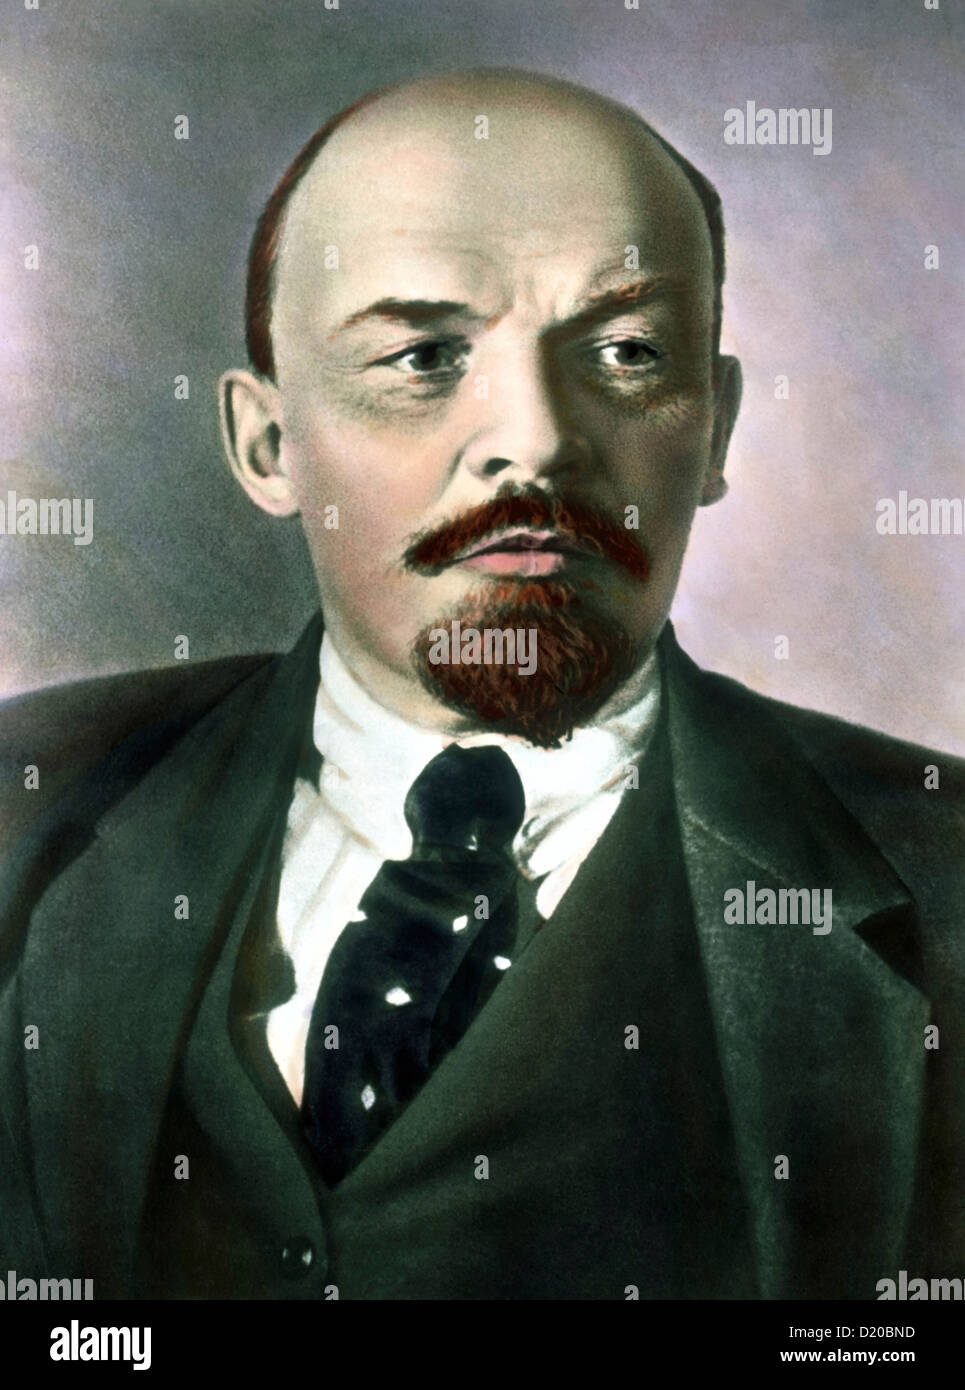 Vladimir Ilyich Lenin auf einer Hand farbigen farbig getönte Laterne Folie aus den 1920er Jahren Stockfoto